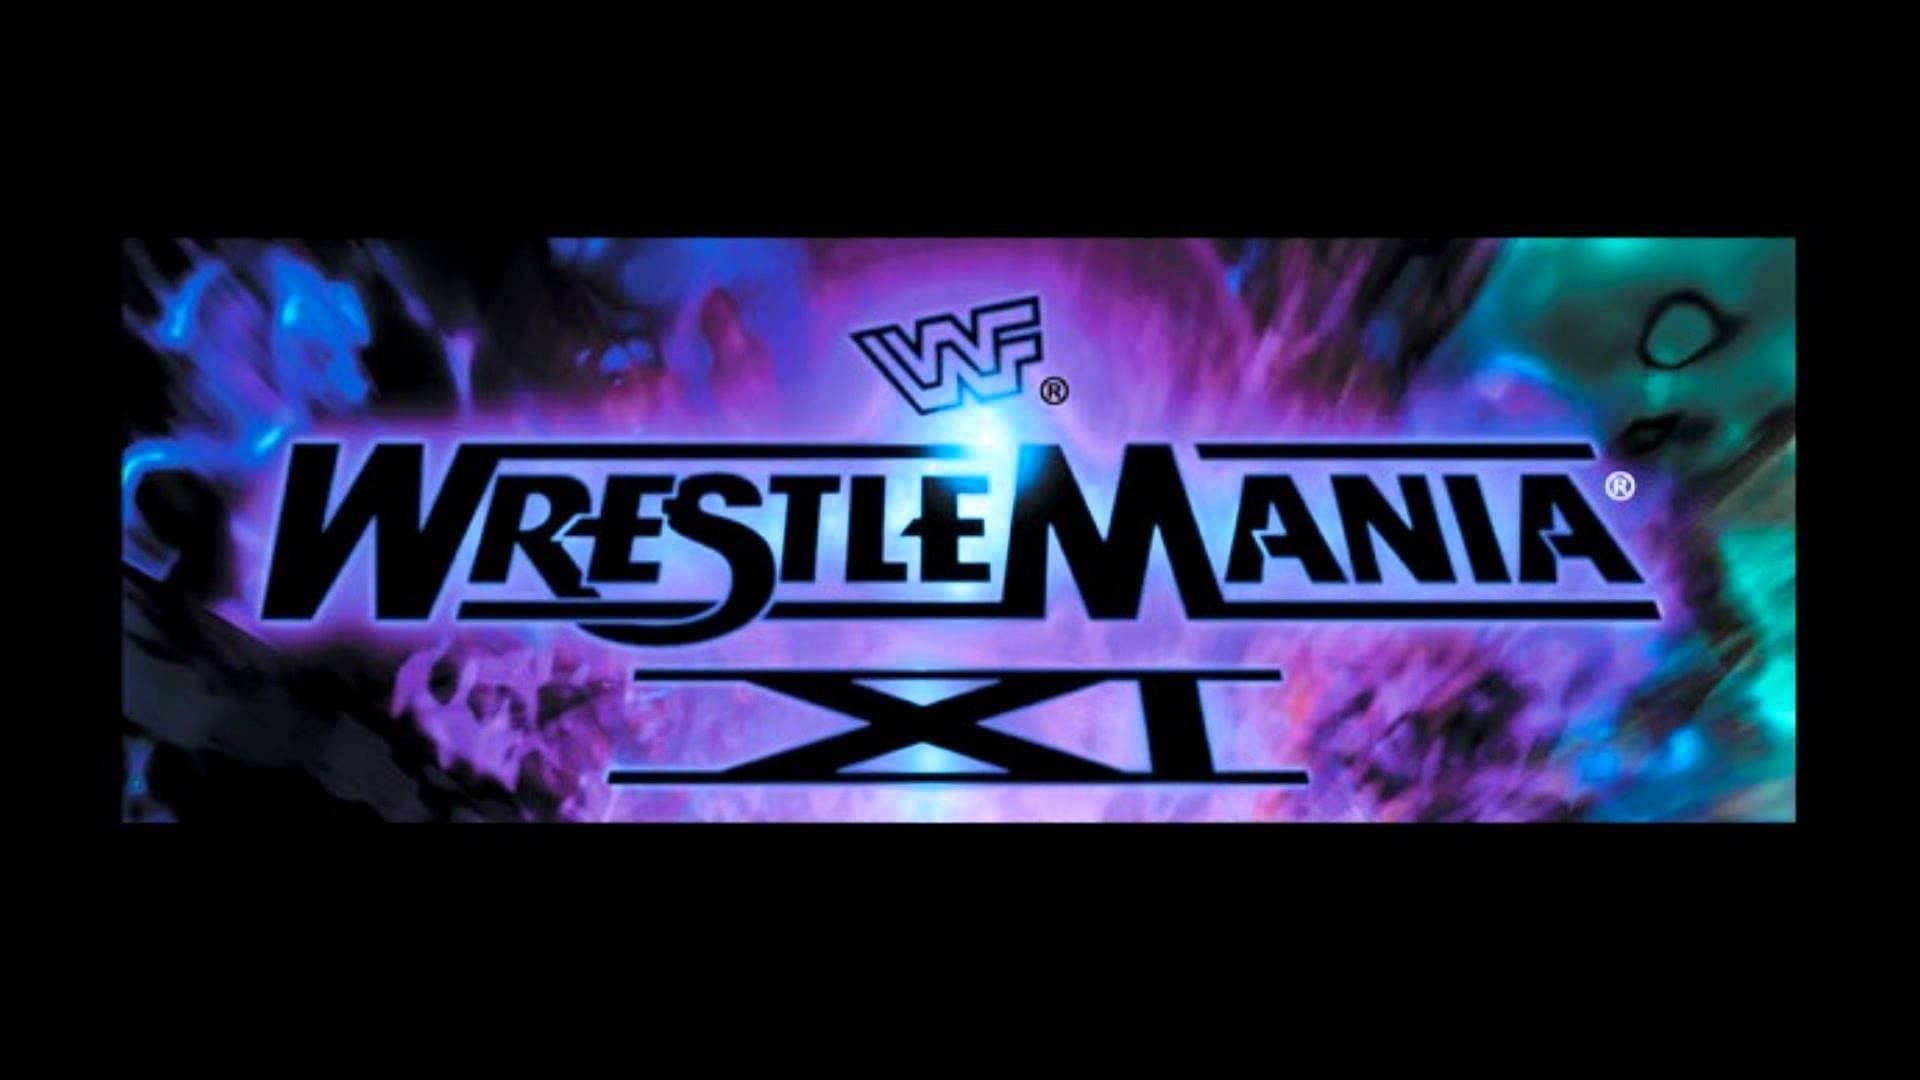 WWE WrestleMania XI